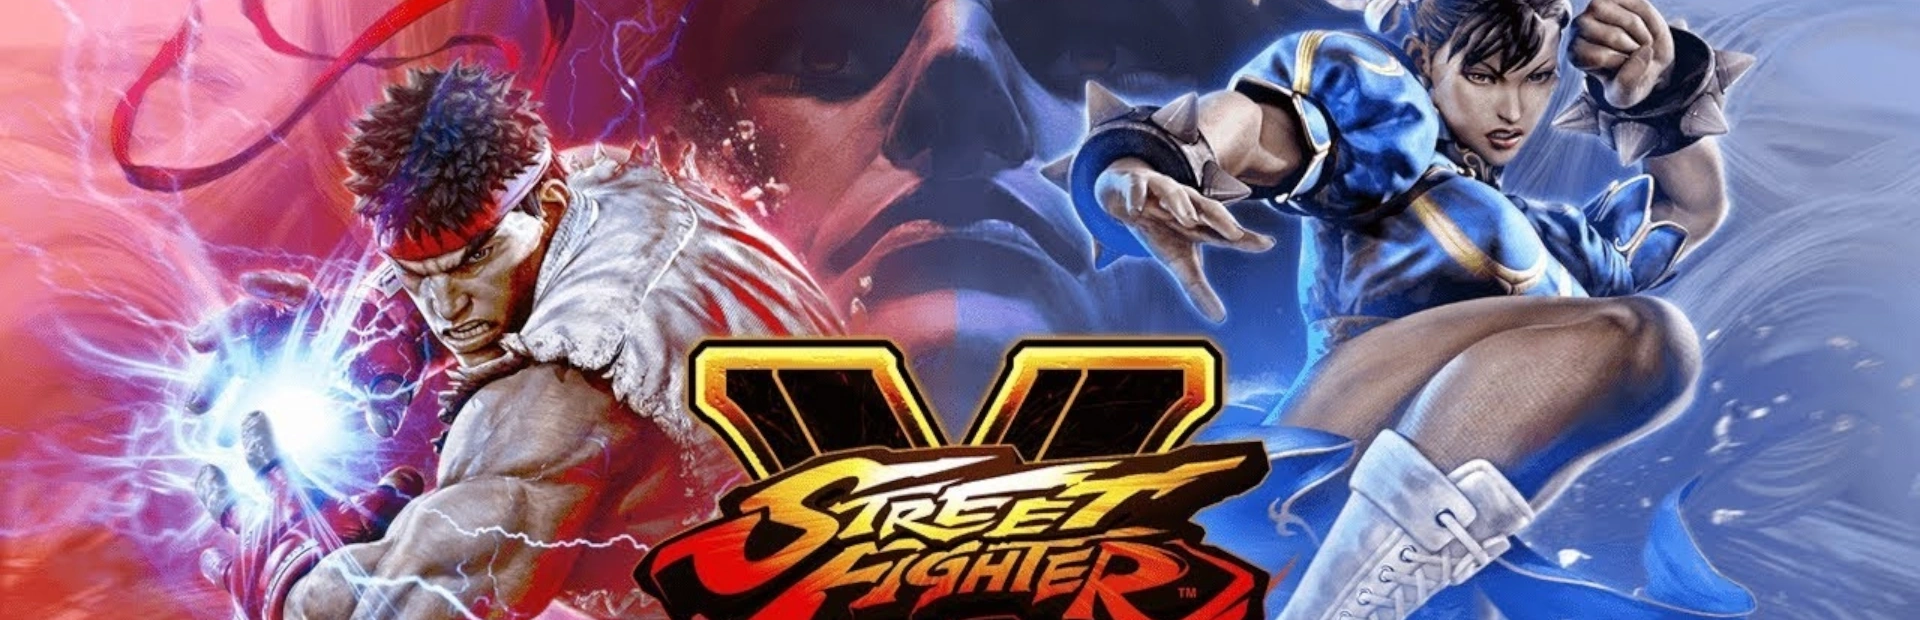 دانلود بازی Street Fighter V برای کامپیوتر | گیمباتو